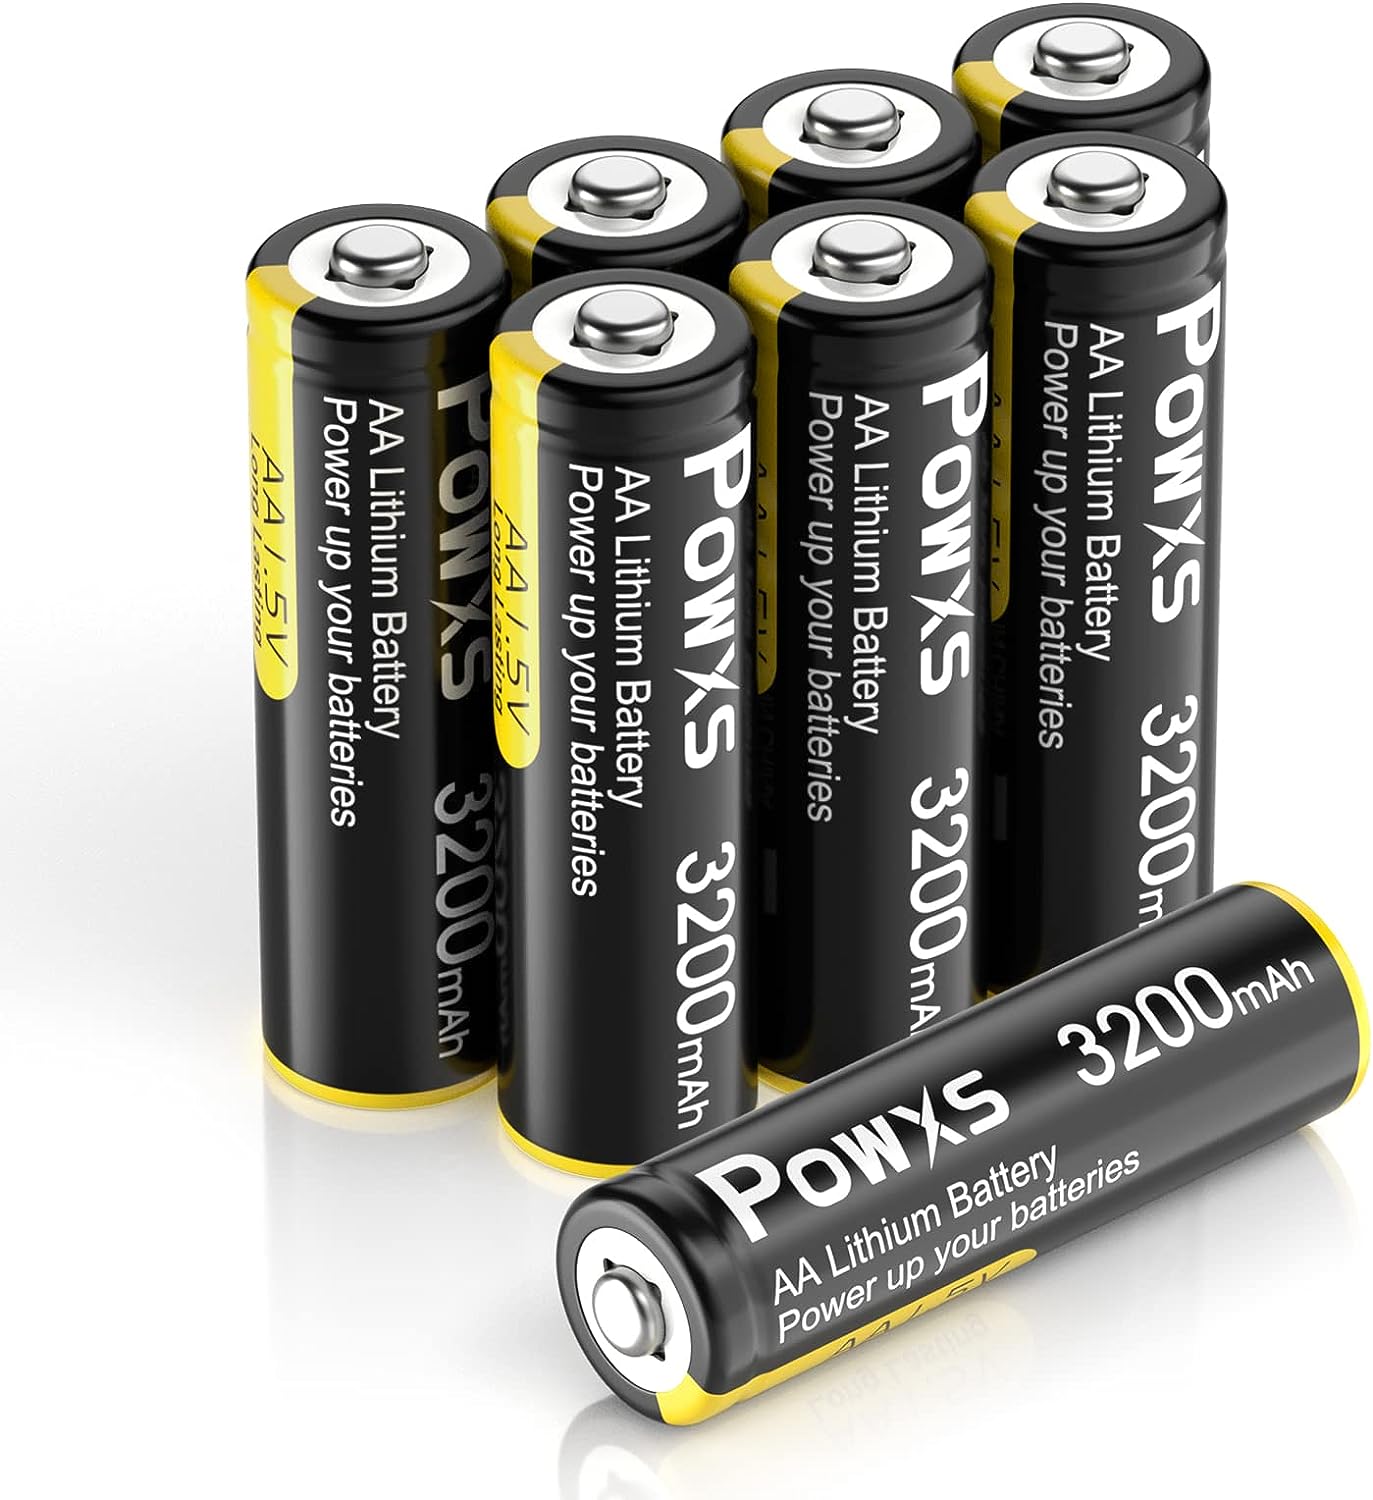 POWXS Lithium Iron Double A Batteries